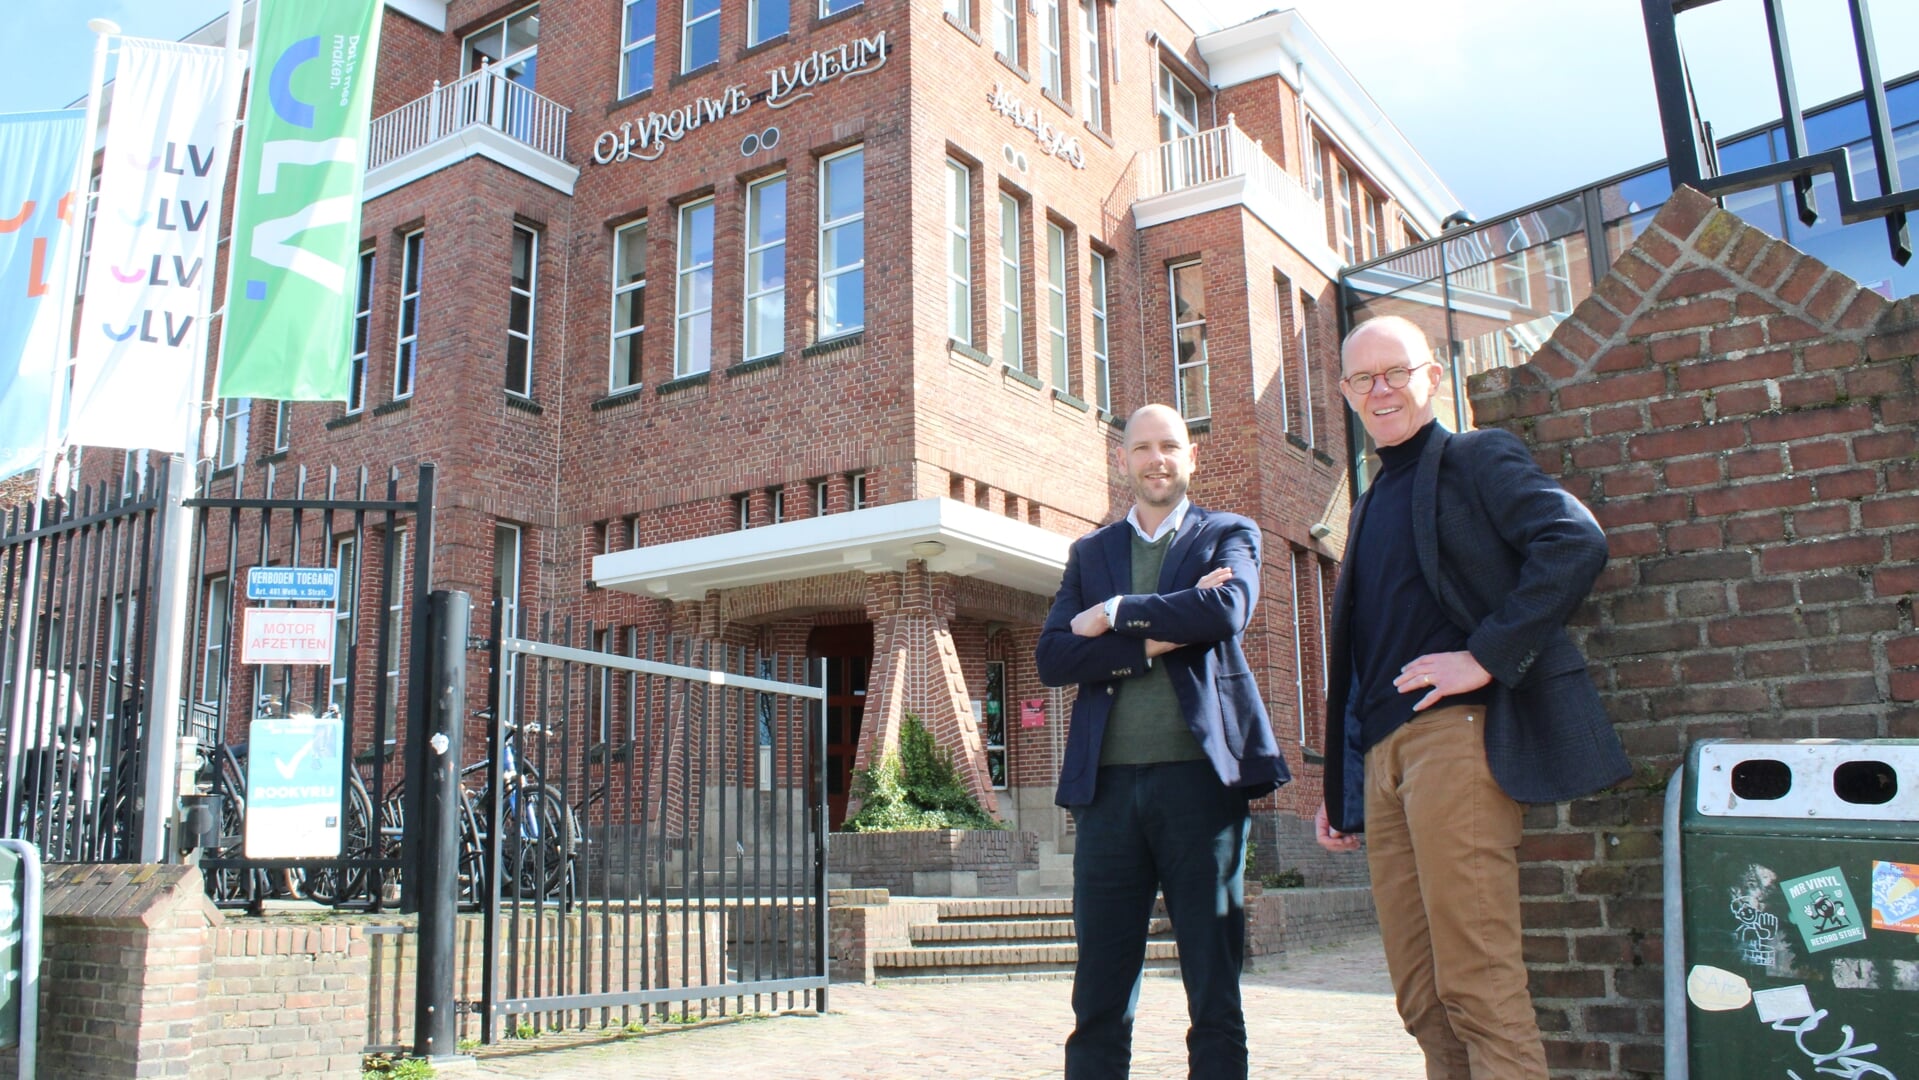 Tol Swinkels en Frits van der Zalm voor het OLV, met daarbij ook de vlaggen met het nieuwe logo van de school